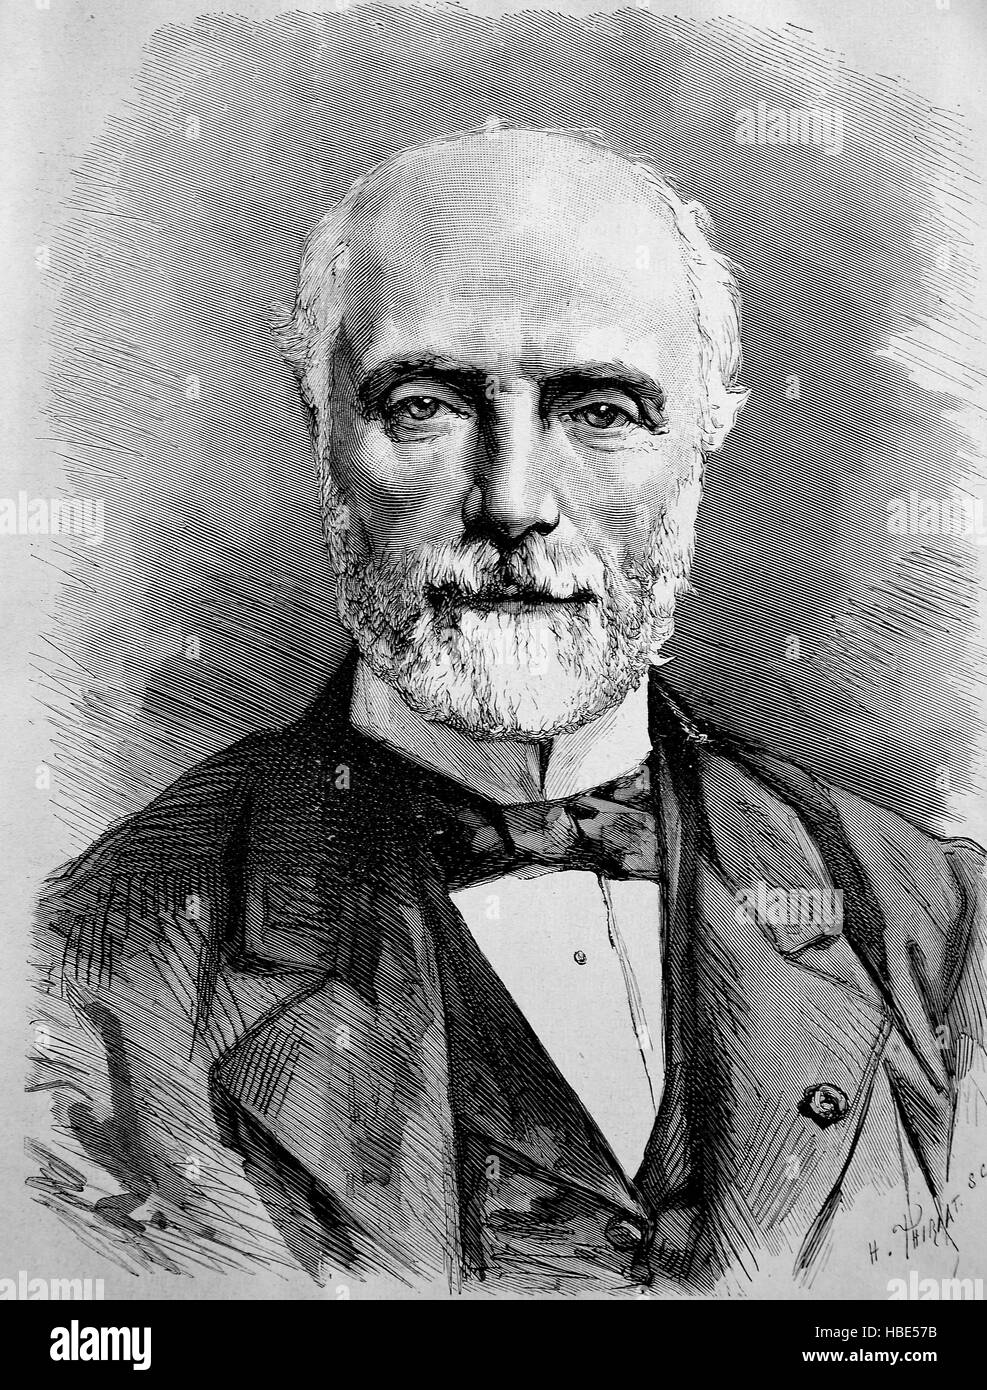 Charles Louis de Saulces de Freycinet, 1828 - 1923, était un homme d'État français et quatre fois premier ministre pendant la Troisième République, illustration, gravure sur bois de 1880 Banque D'Images